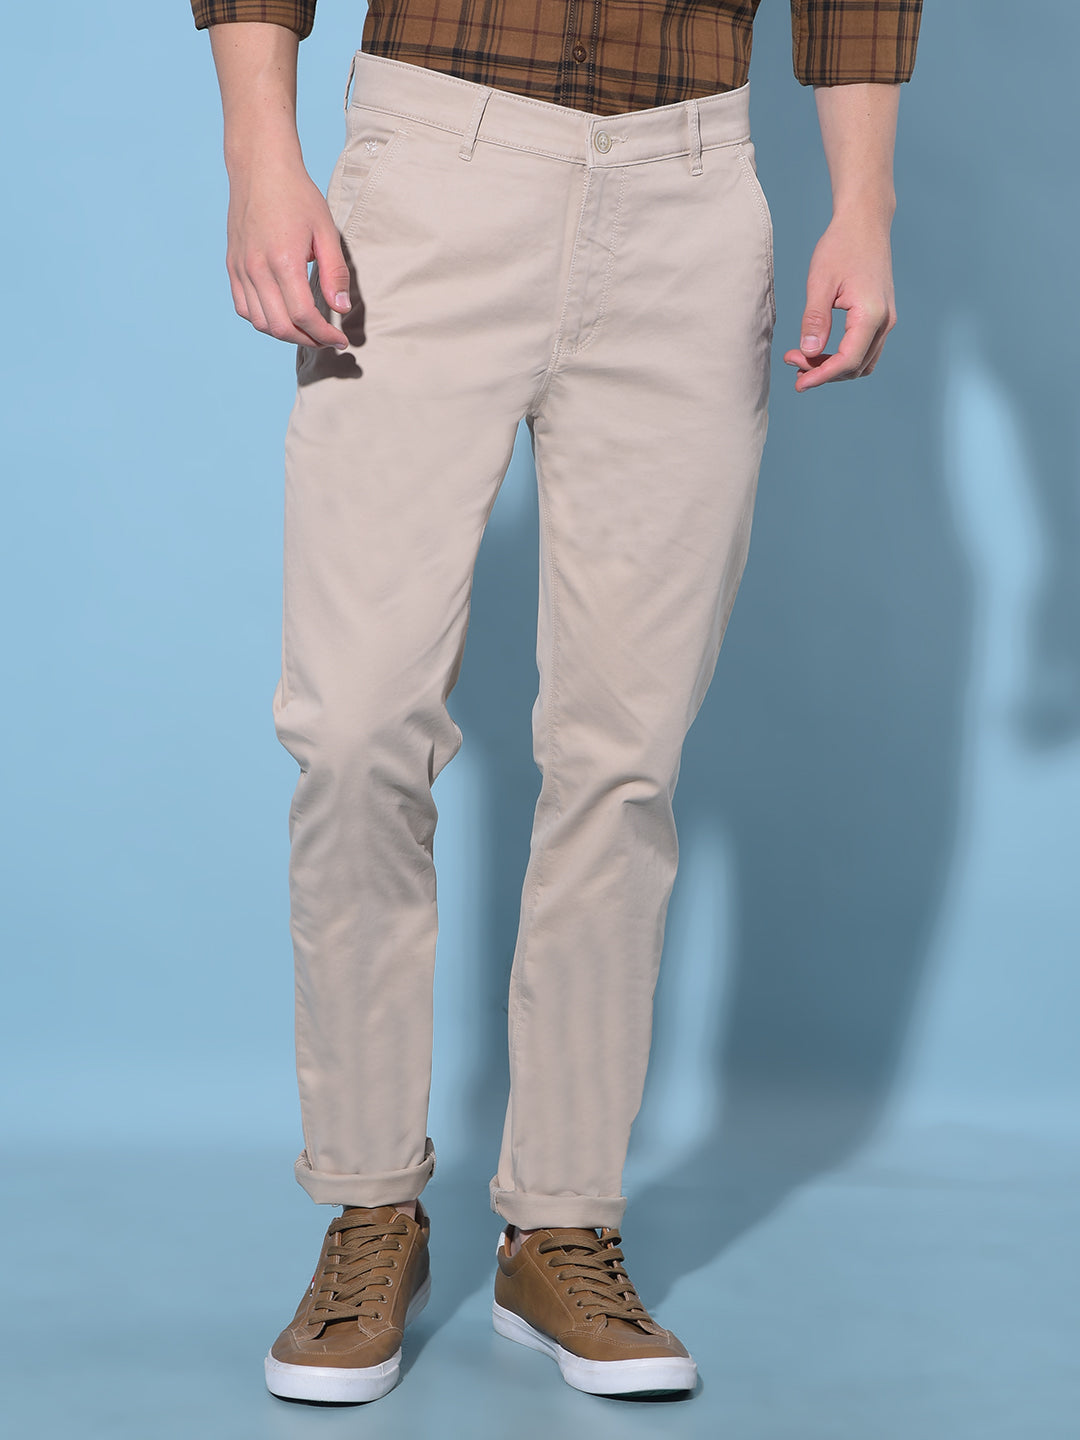 Beige Cotton Trousers-Men Trousers-Crimsoune Club